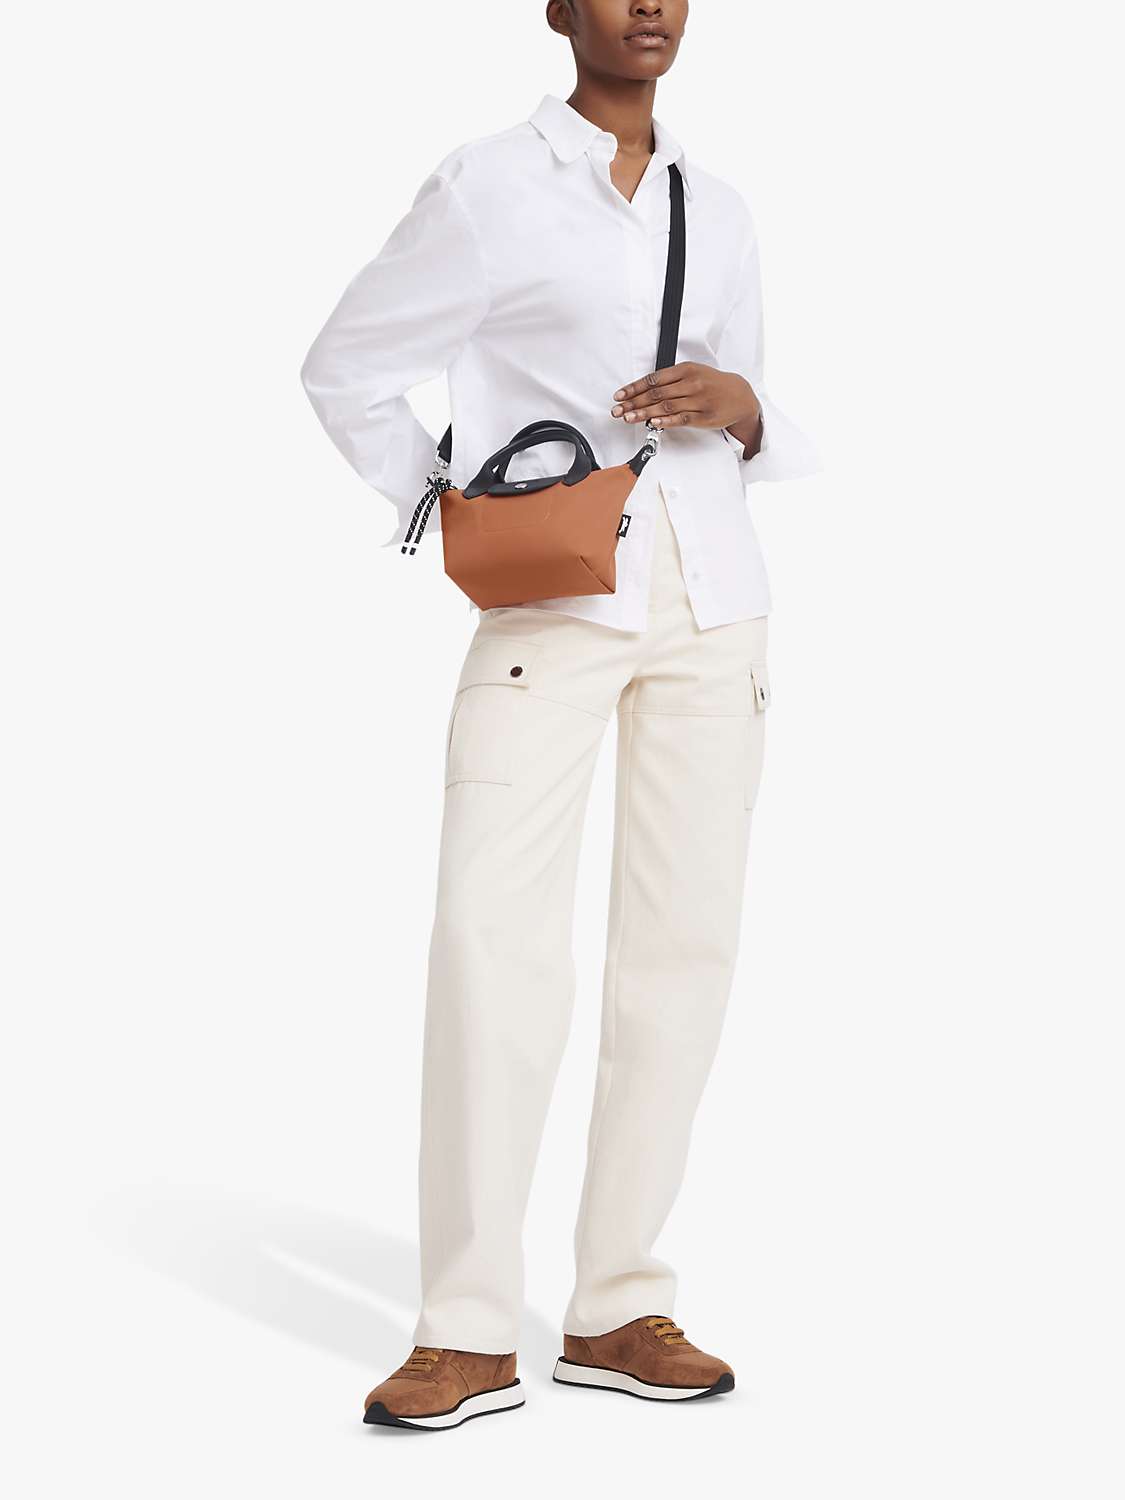 Buy Longchamp Le Pliage Energy Mini Top Handle Bag Online at johnlewis.com